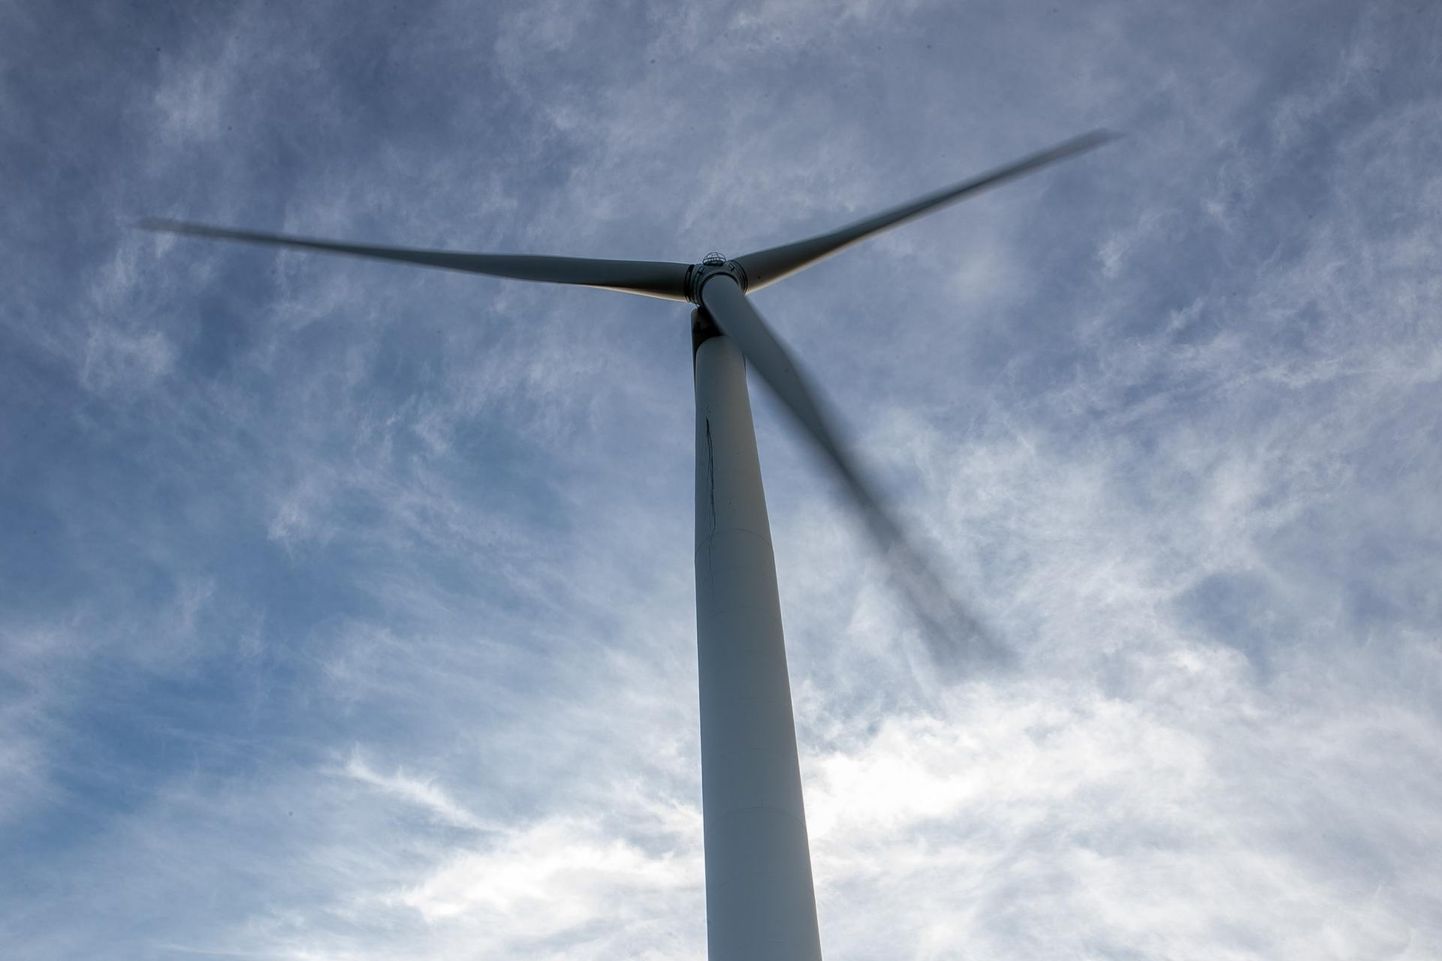 Euroopa Liidu toetuse abil suurendatakse tuuleenergia tootmist: tehakse kindlaks tuuleenergia jaoks sobivad alad, lihtsustatakse lubade andmist ja suurendatakse lubasid väljastavate asutuste suutlikkust